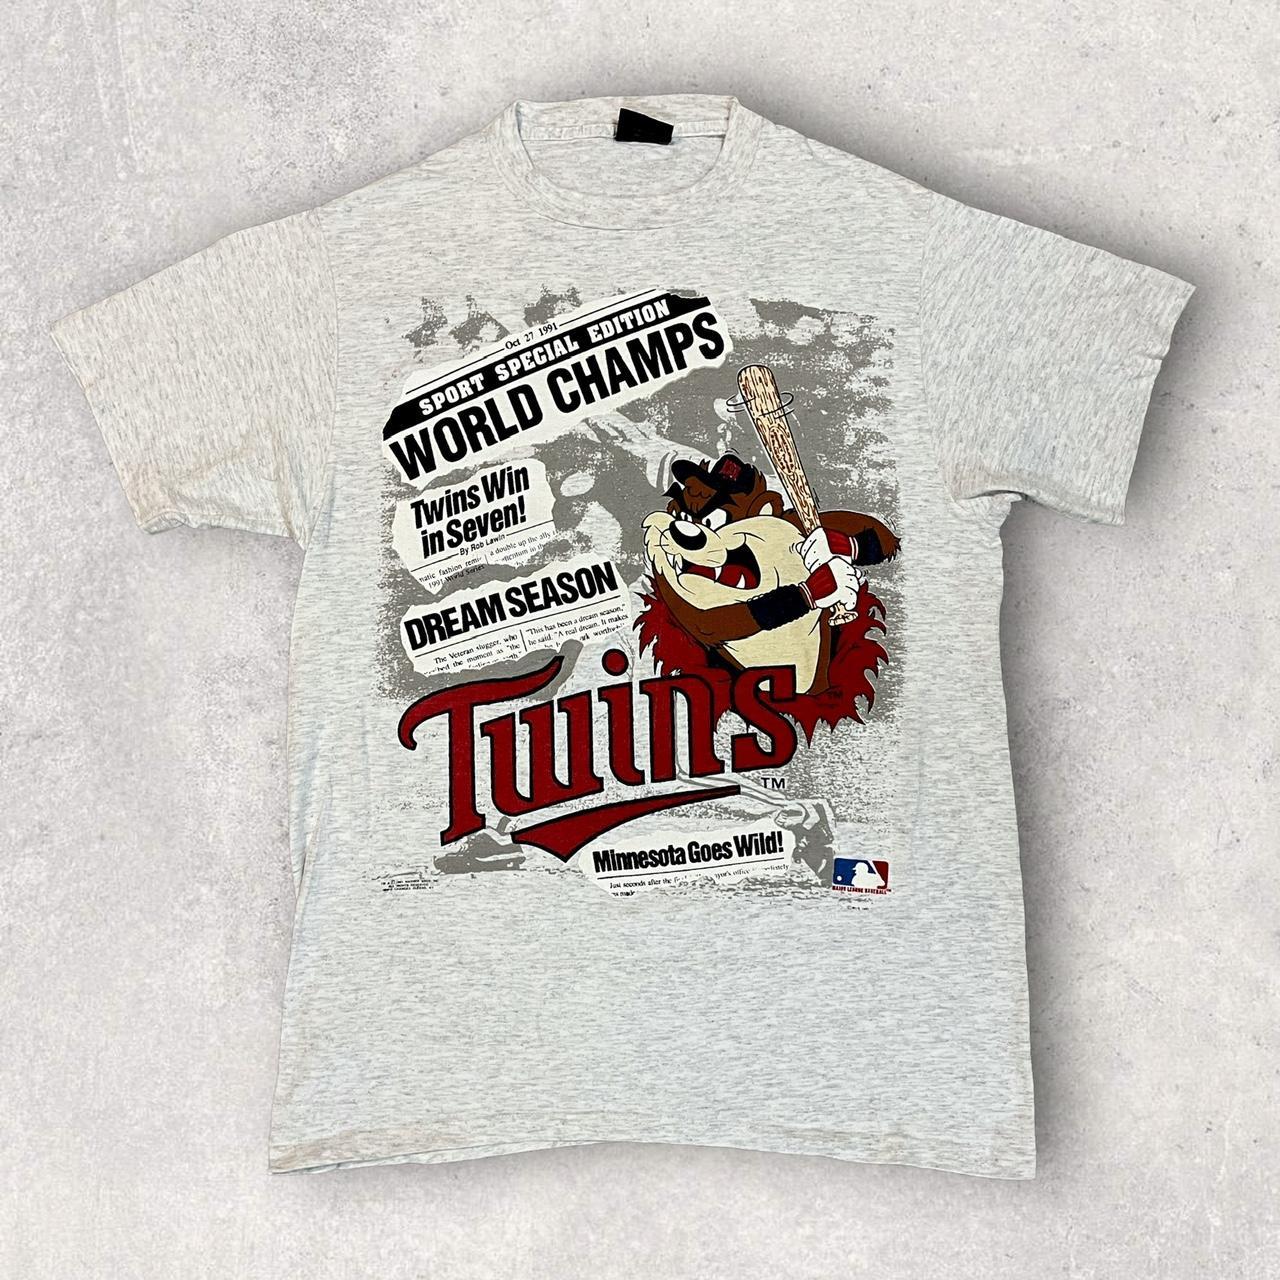 MLB T-Shirt - Minnesota Twins, Medium